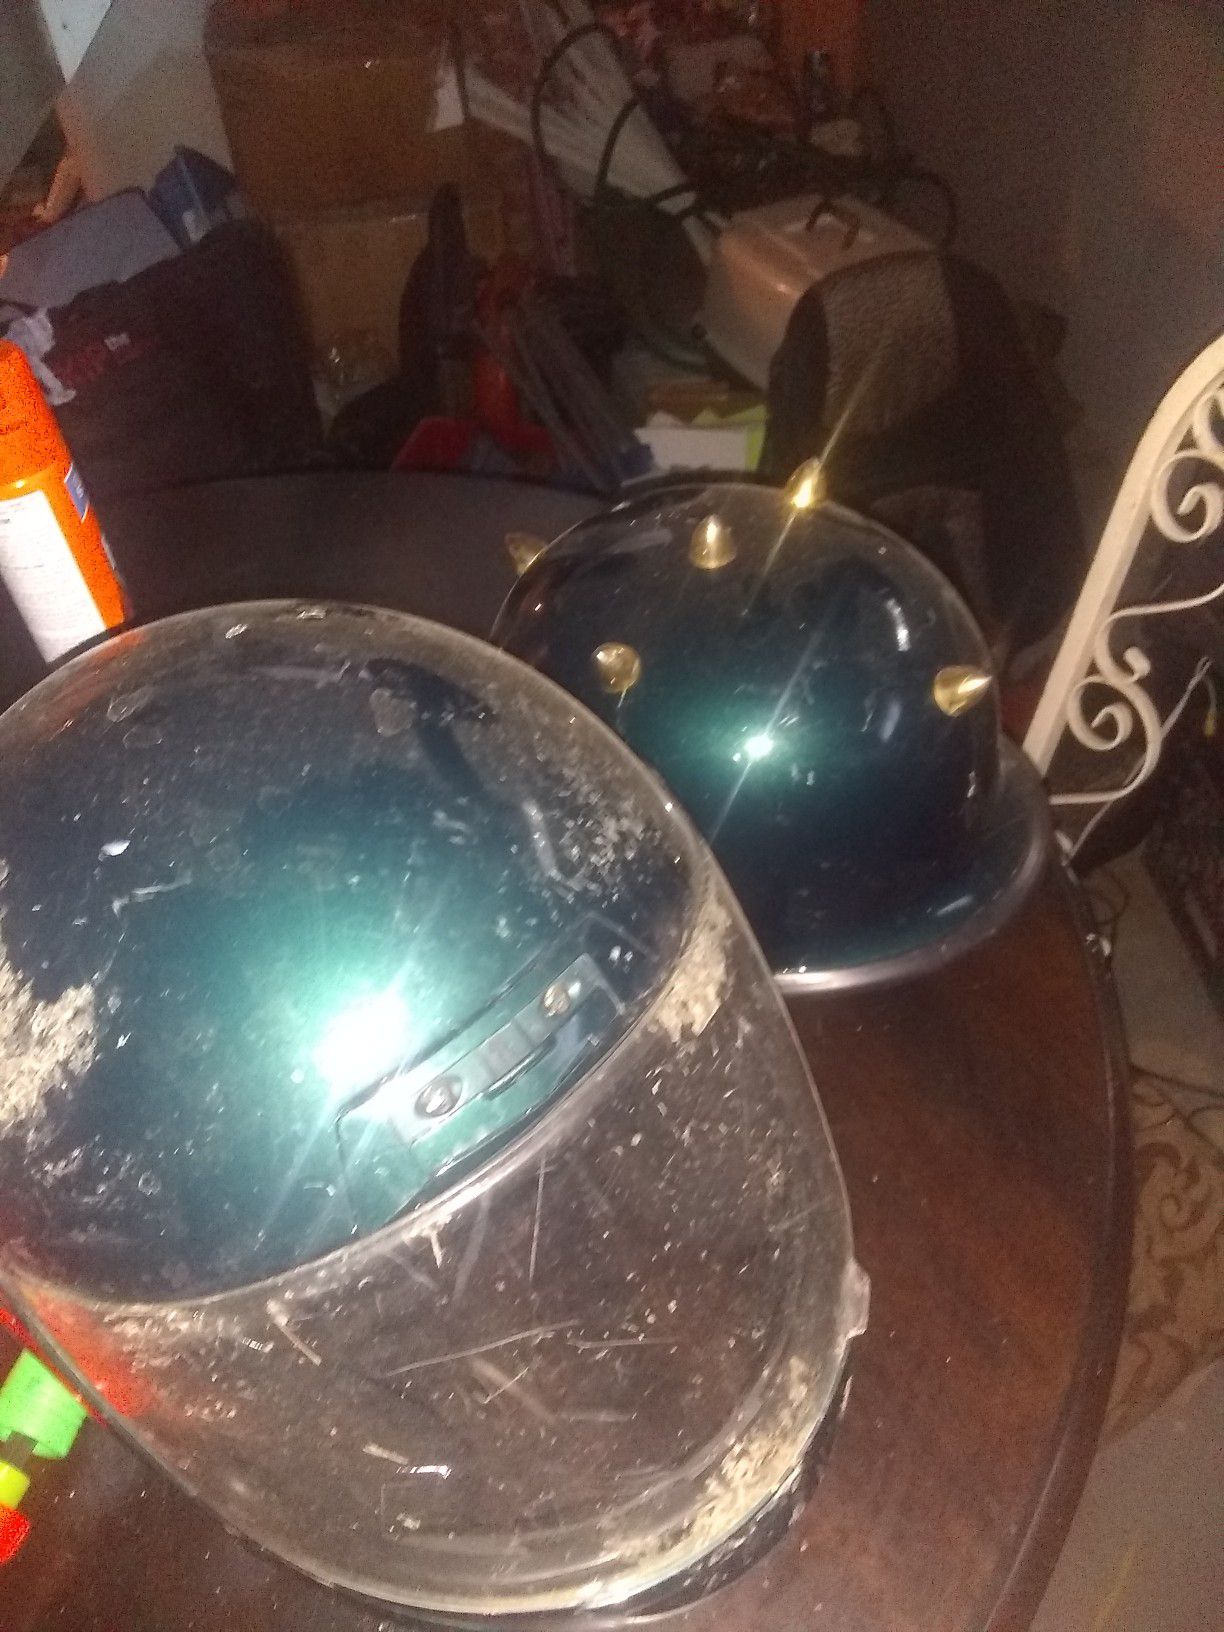 2 used motorcycle helmets